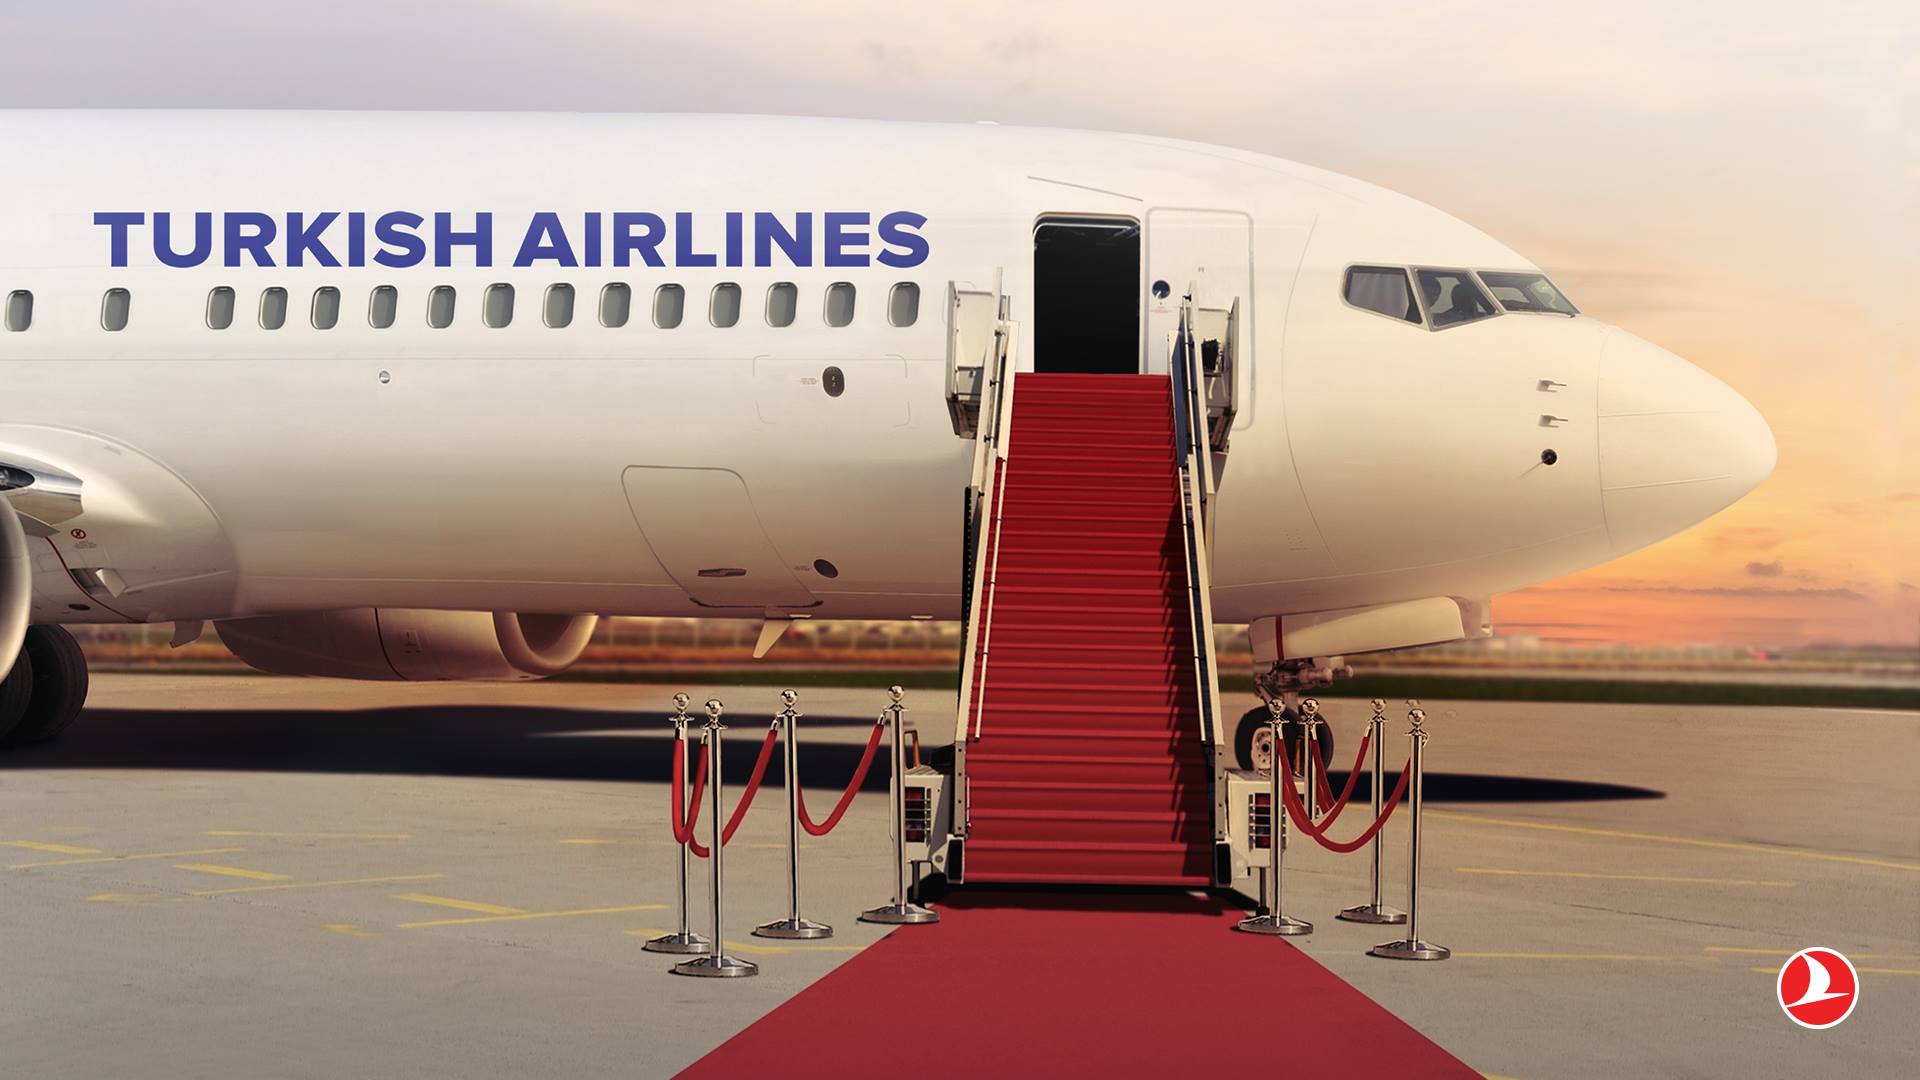 ¡De impacto! Turkish Airlines ha transportado a 51 millones de pasajeros en lo que va de año